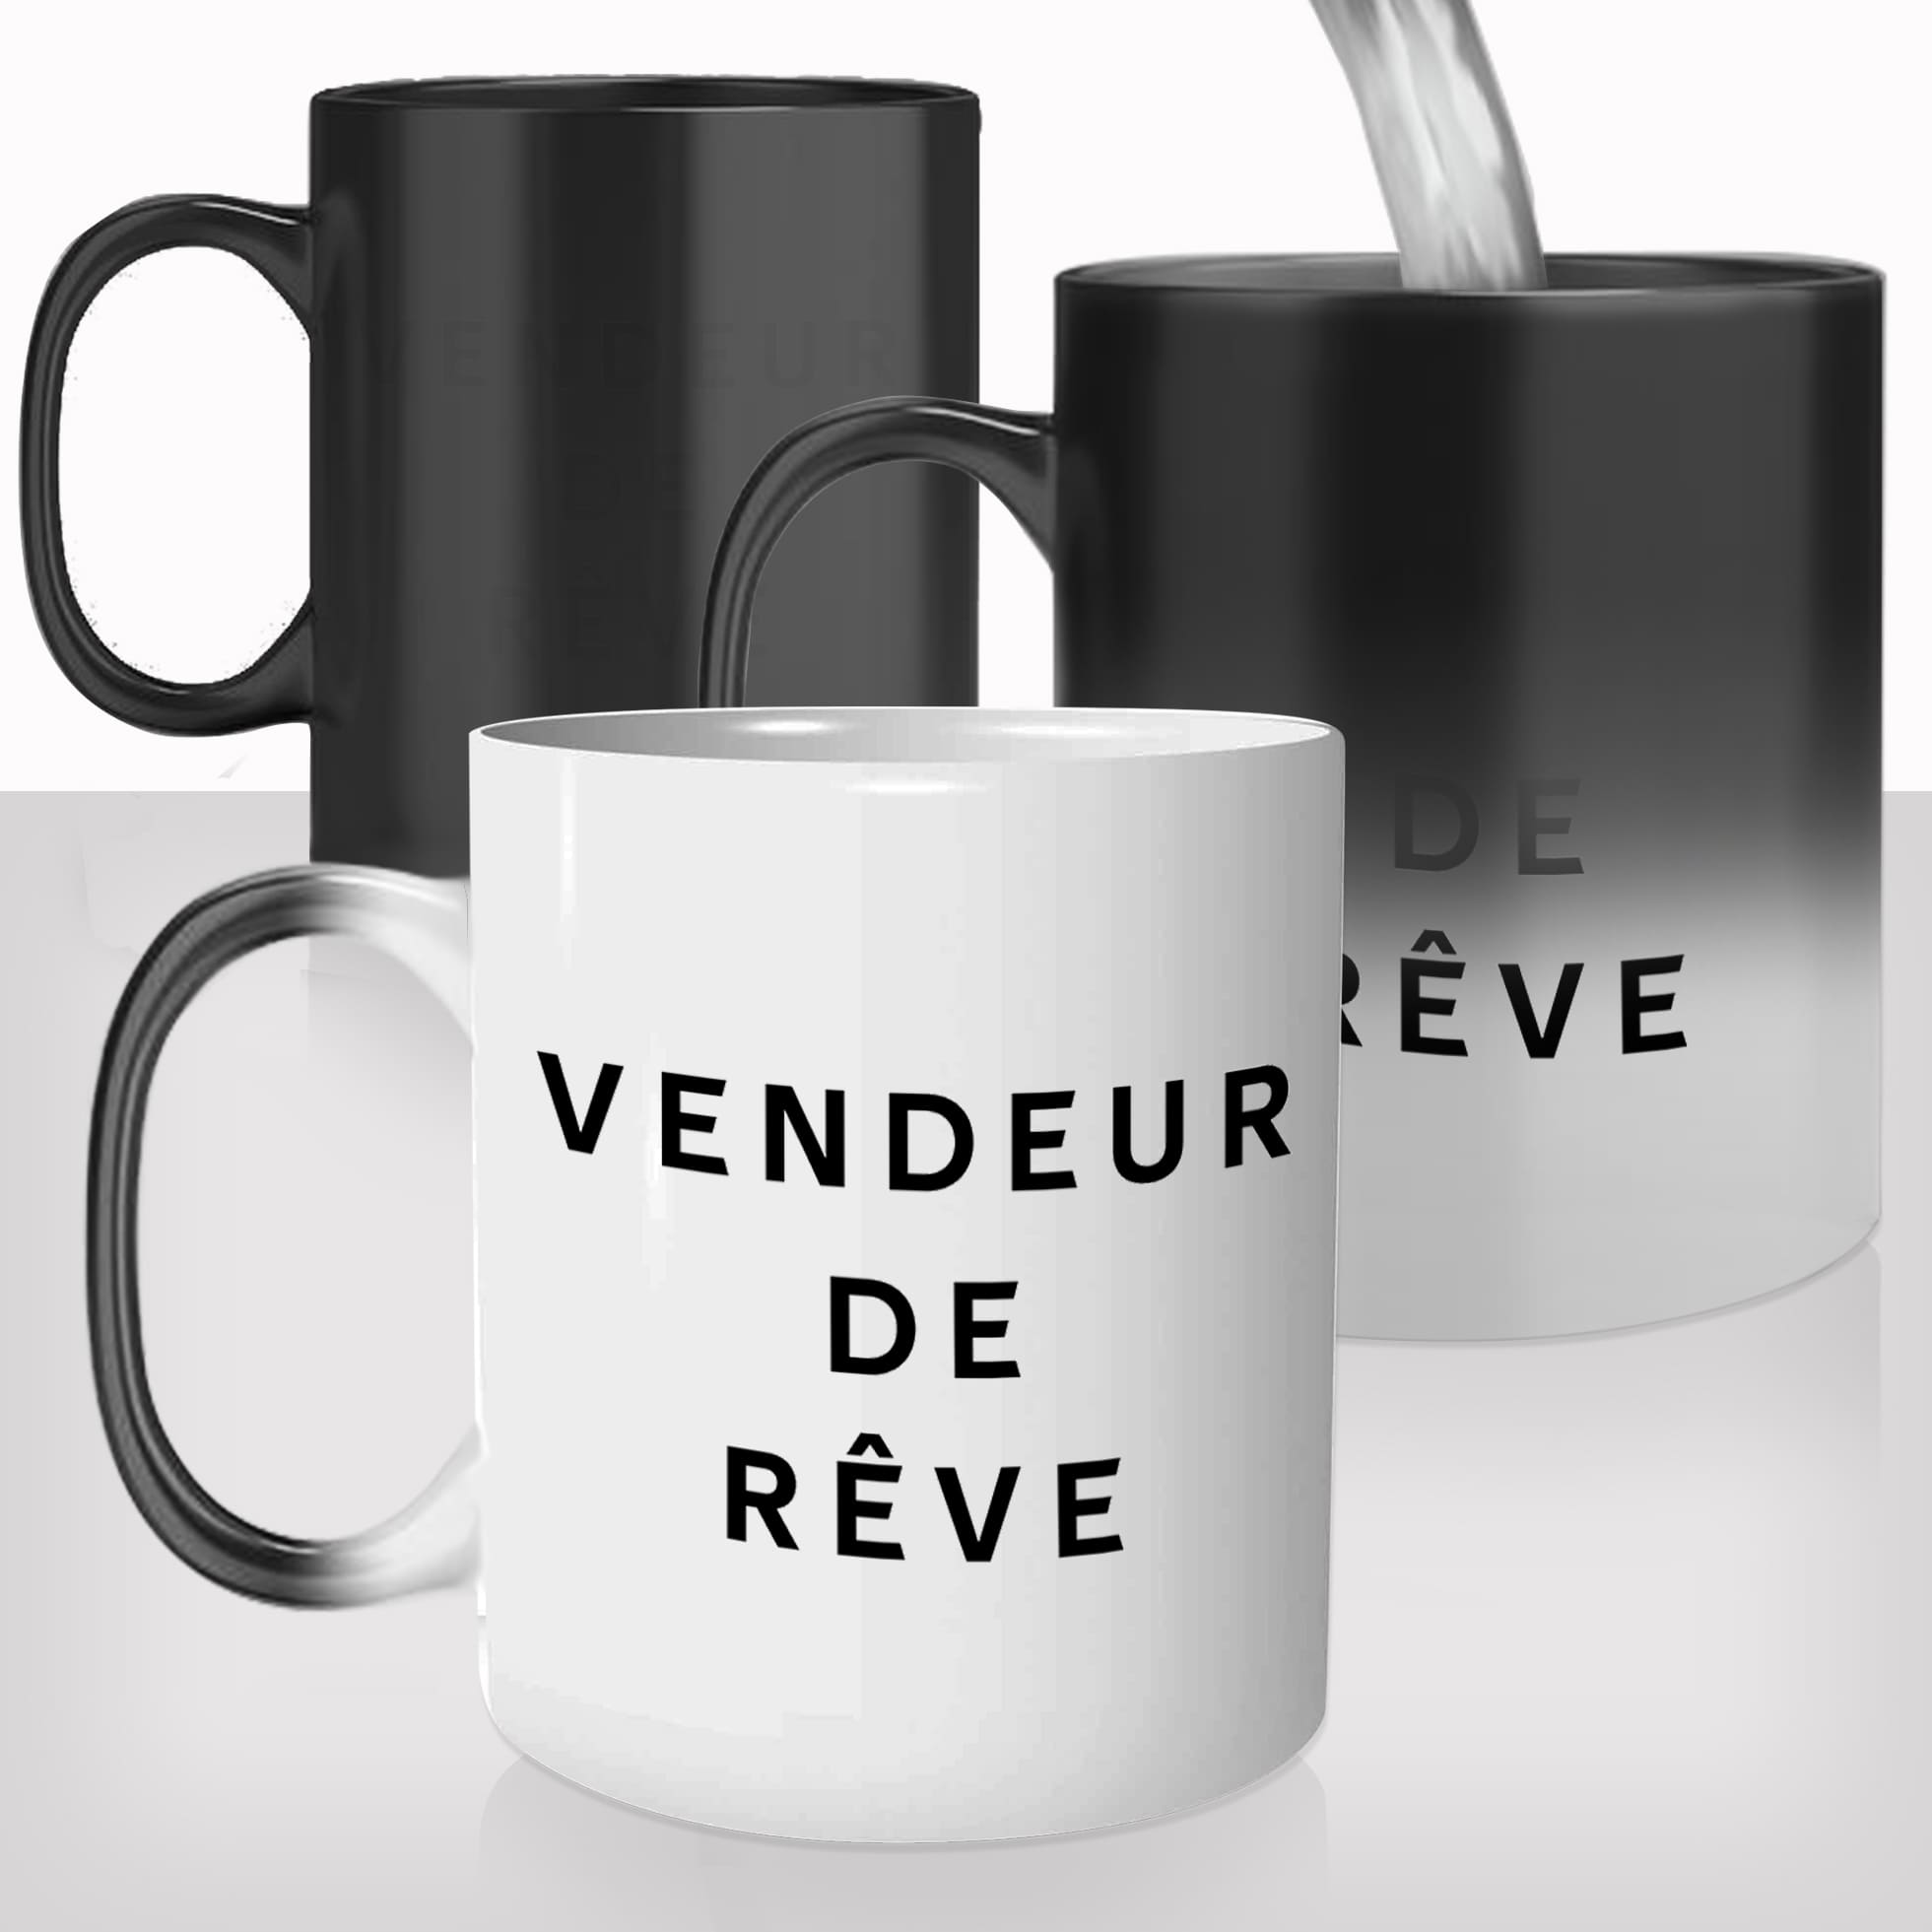 mug-magique-personnalisé-tasse-thermo-reactif-thermique-vendeur-de-reve-homme-photo-personnalisable-cadeau-original-cool